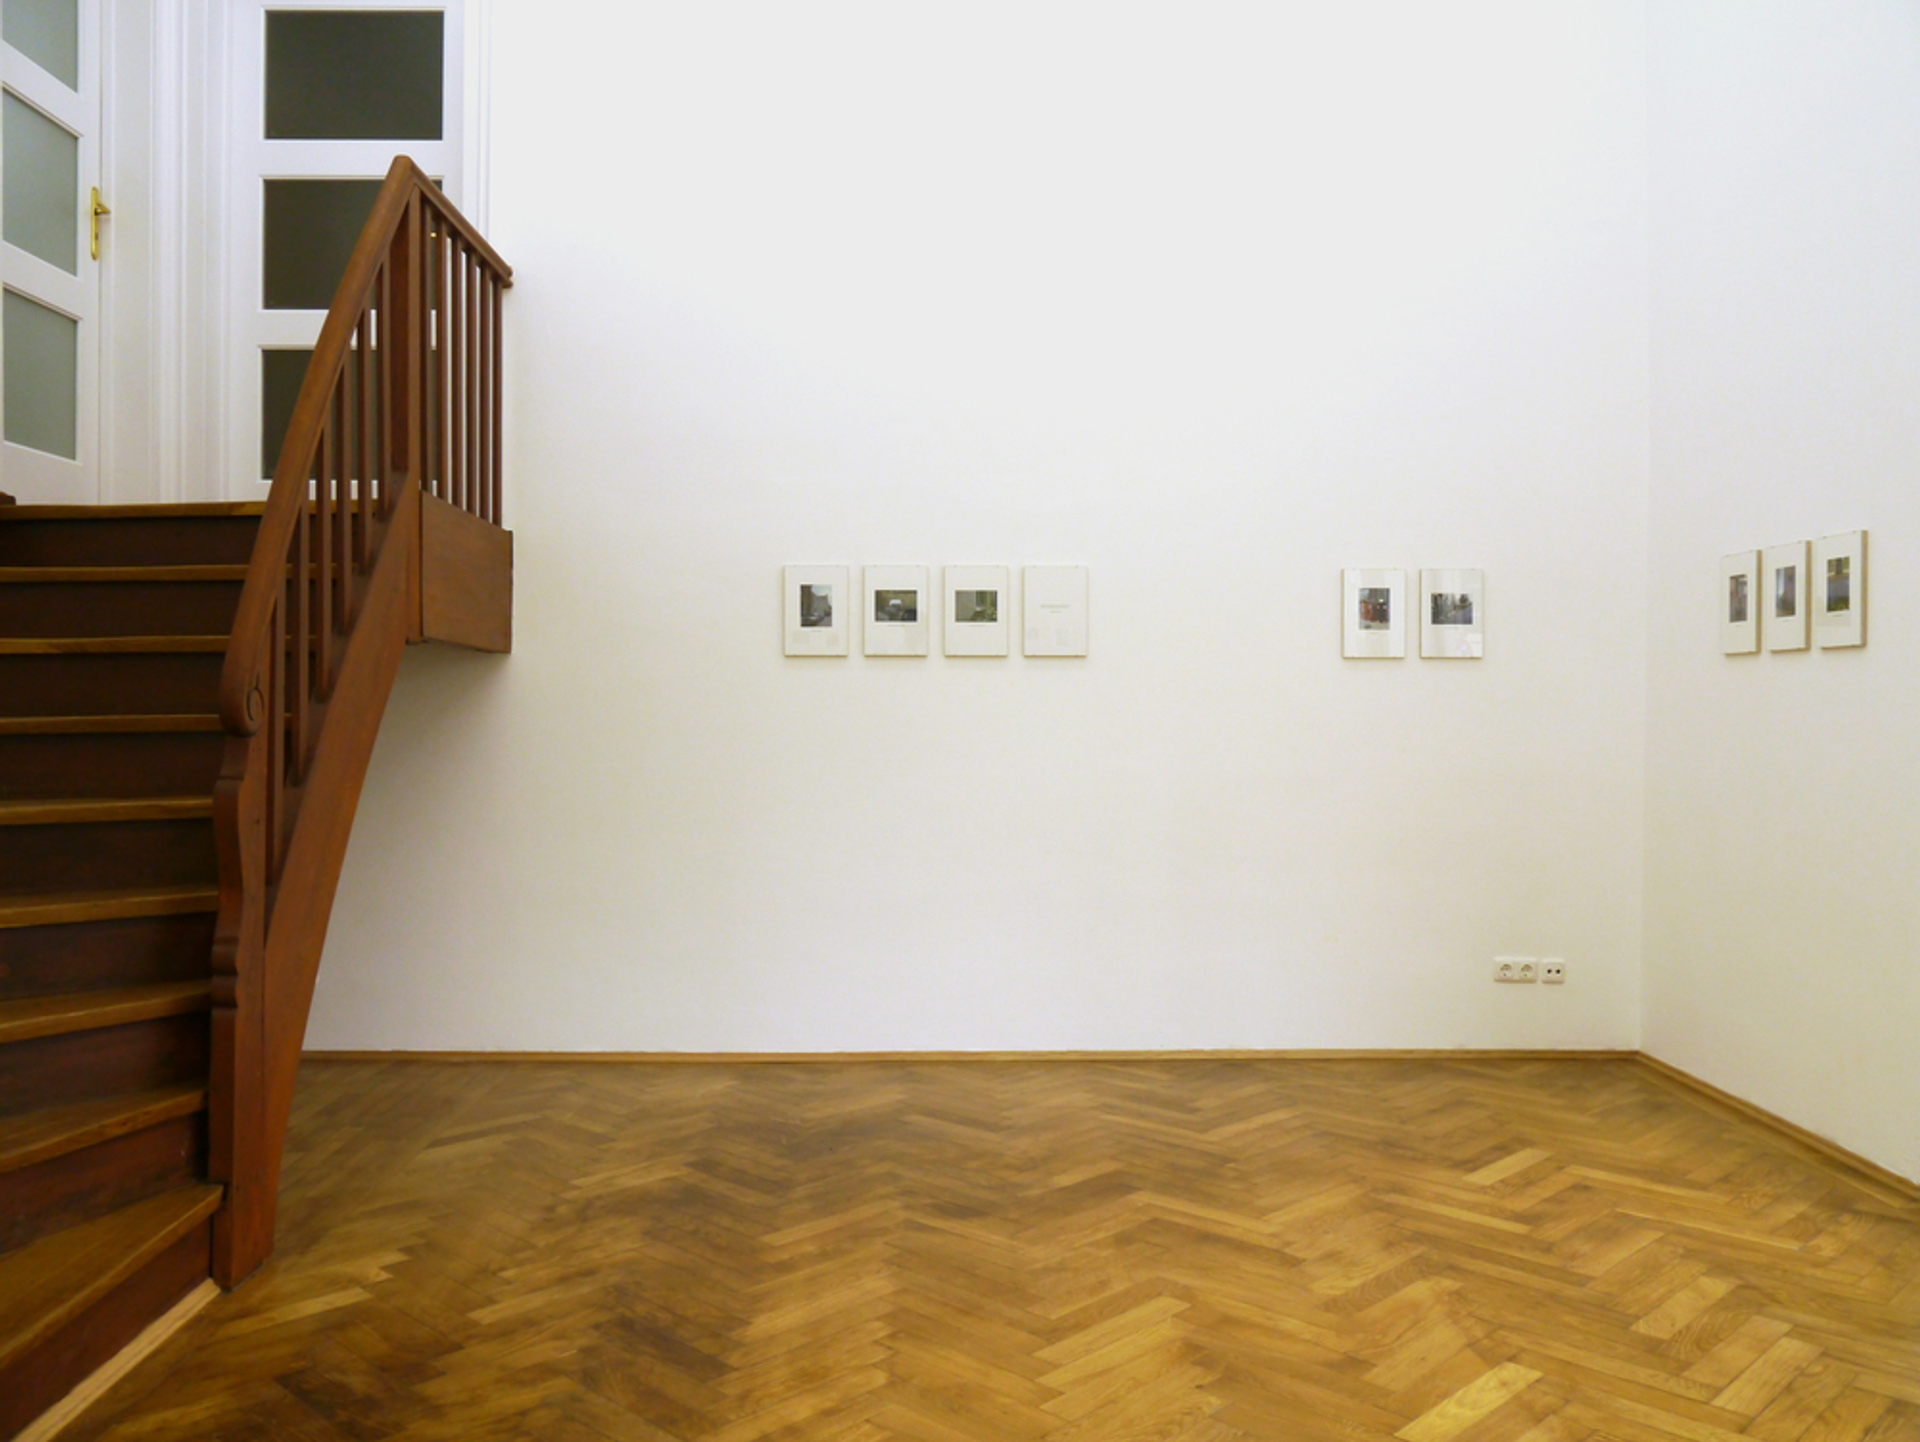 Installation view: Thomas Geiger, “Skulptürchen”, 2015